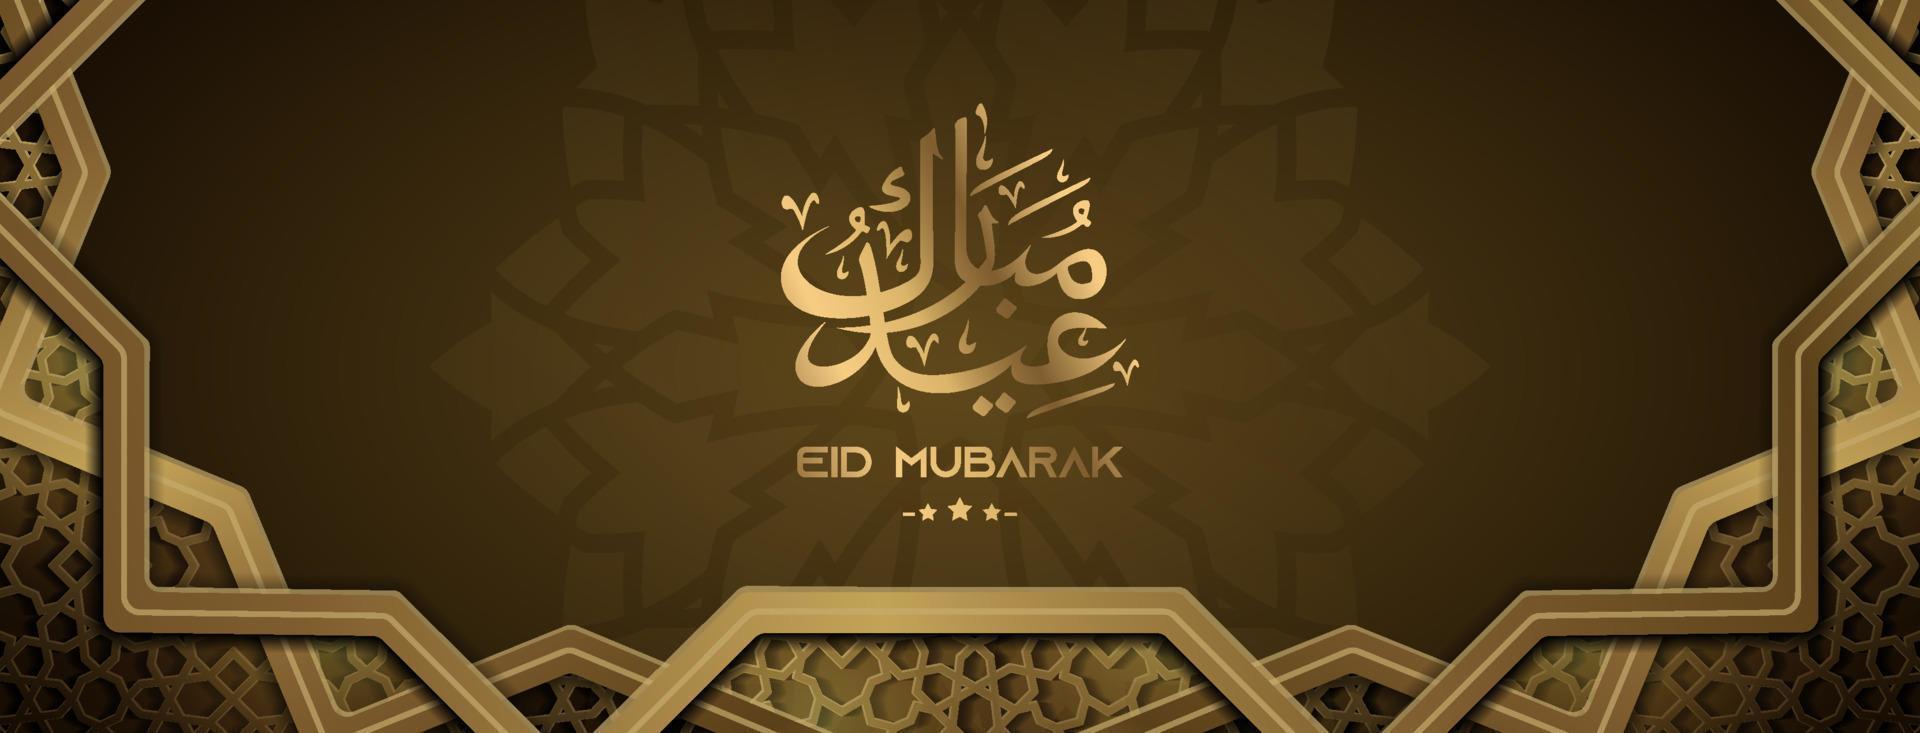 bannière de voeux eid mubarak de style luxe avec décoration géométrique vecteur